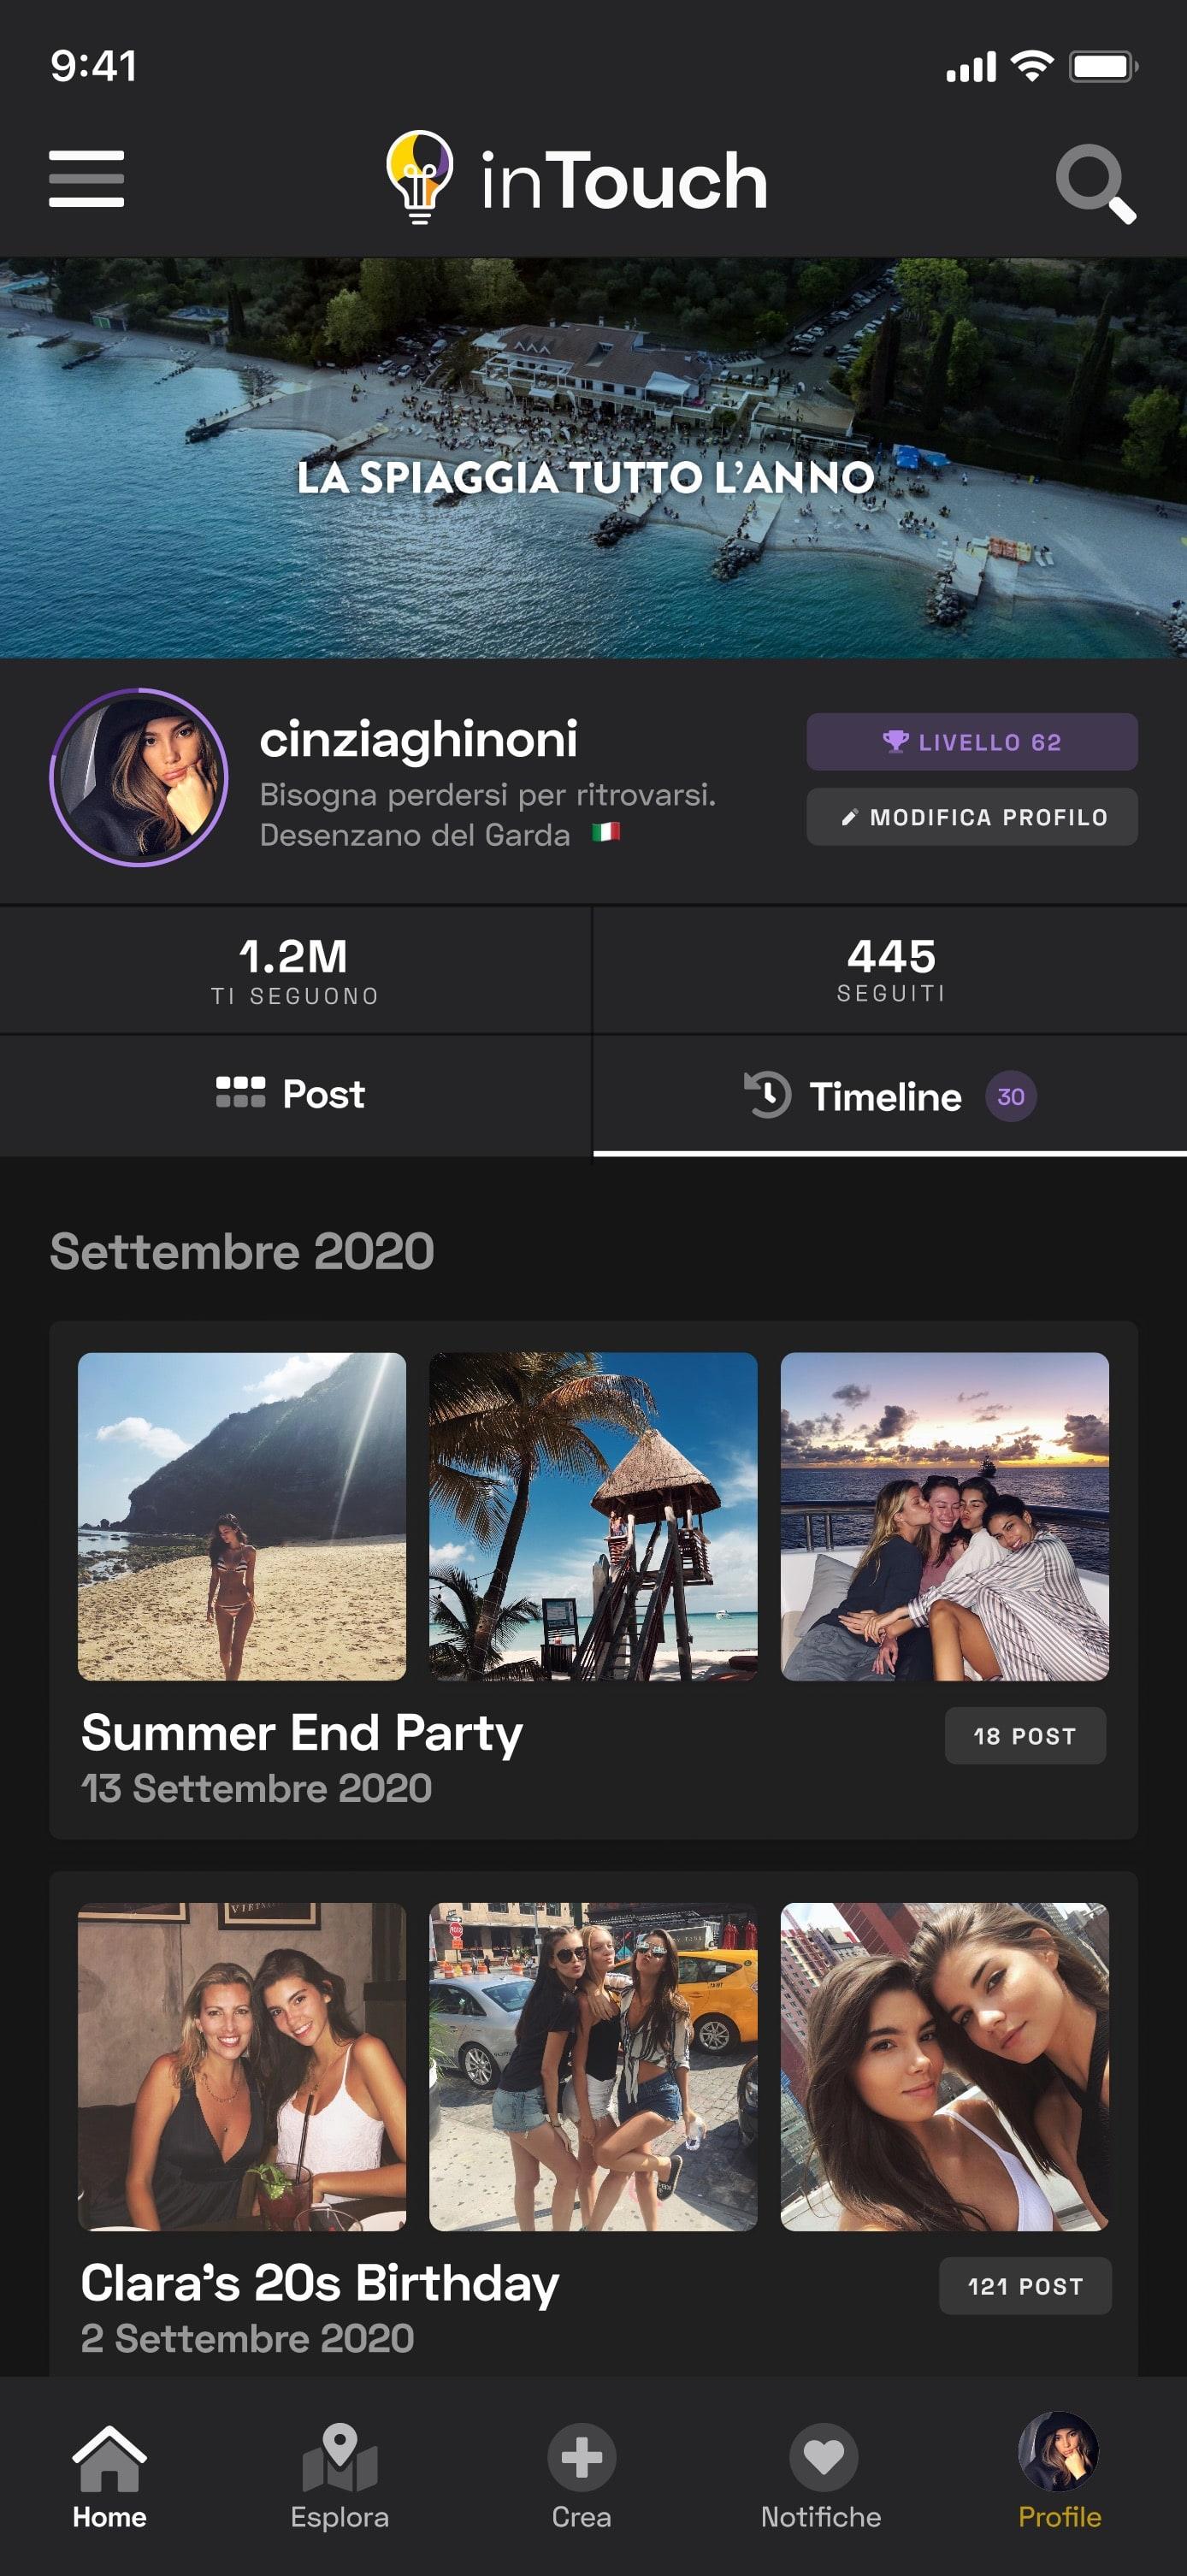 InTouch App UI - Profile Timeline